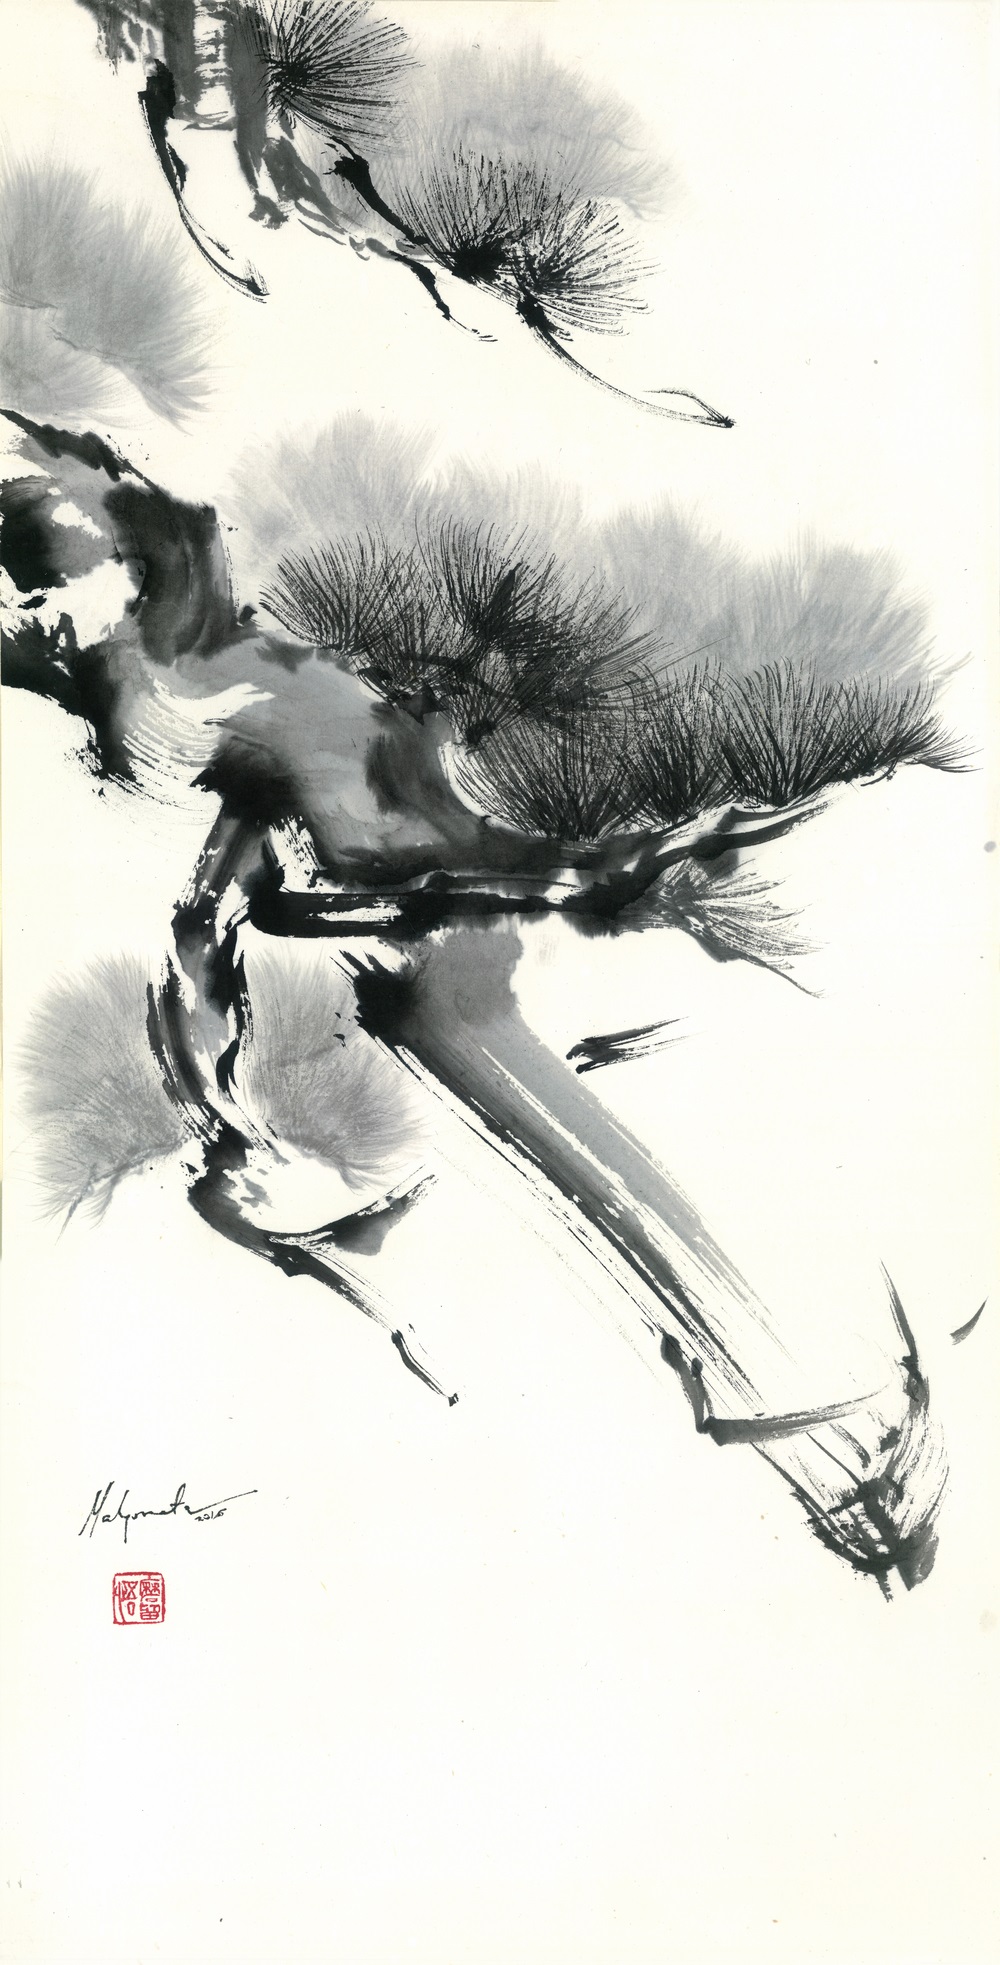 Malgorzata Olejniczak, Kiefer, 2016, Hängerolle, Tusche auf japanischem Papier, 66,5 x 33,5 cm, mit Seidenmontierung 119 x45 cm (Ausschnitt)